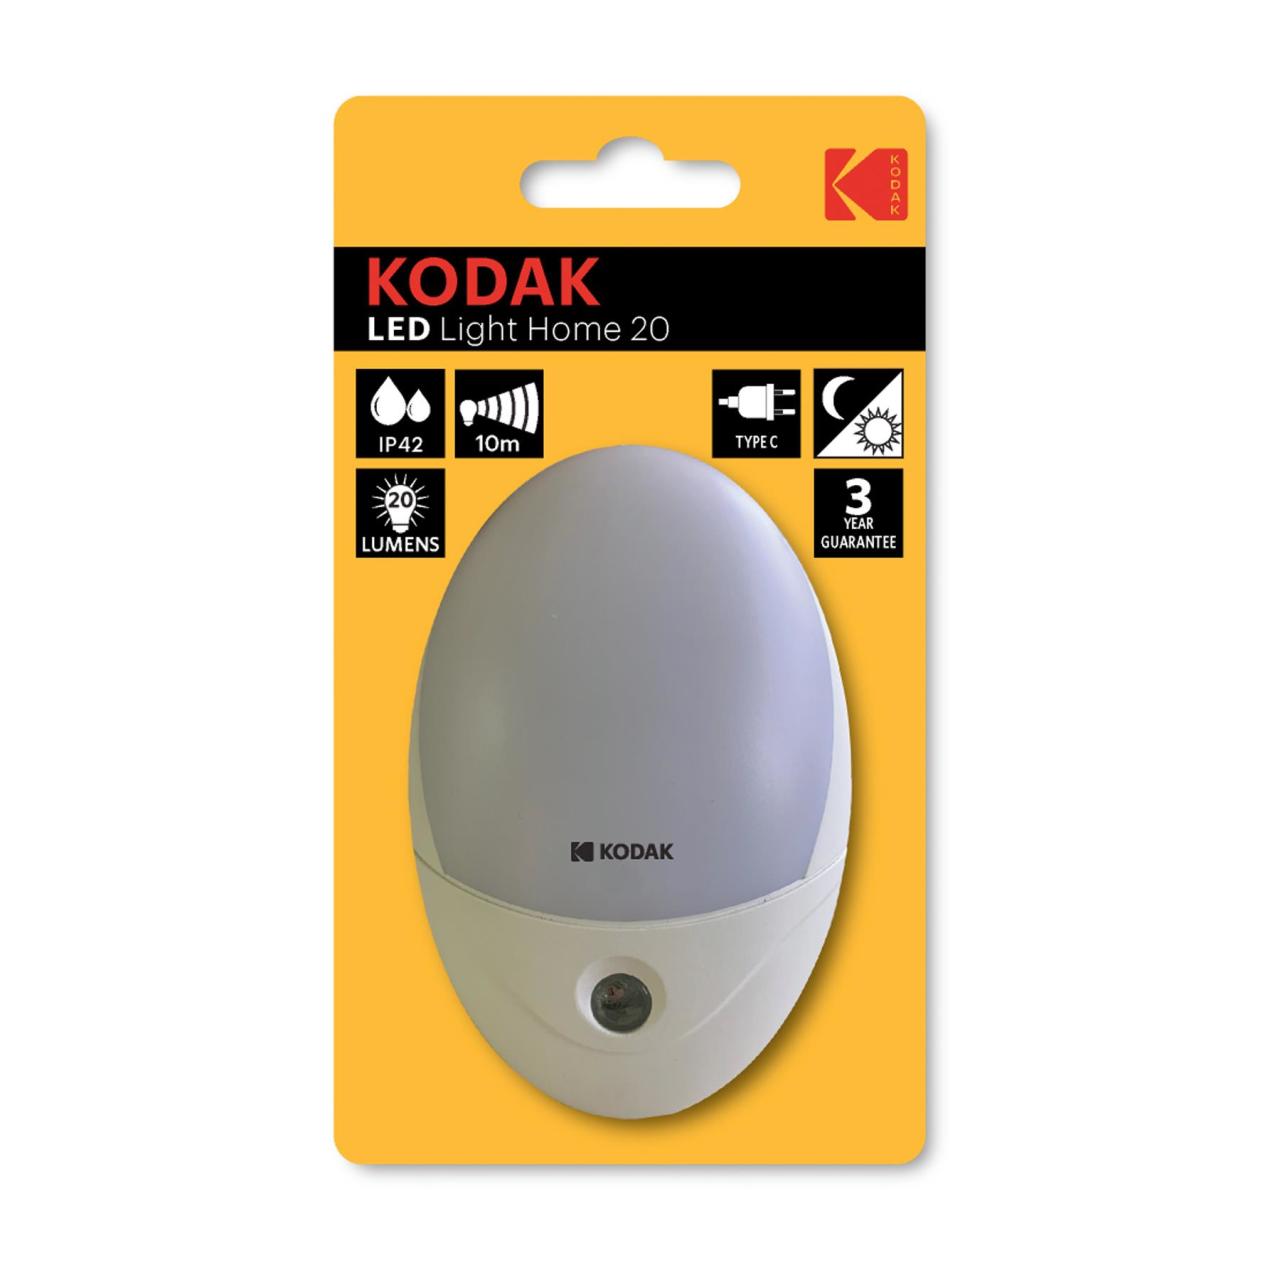 Kodak LED Light Home 20/20 Lümen Sensörlü Gece Lambası